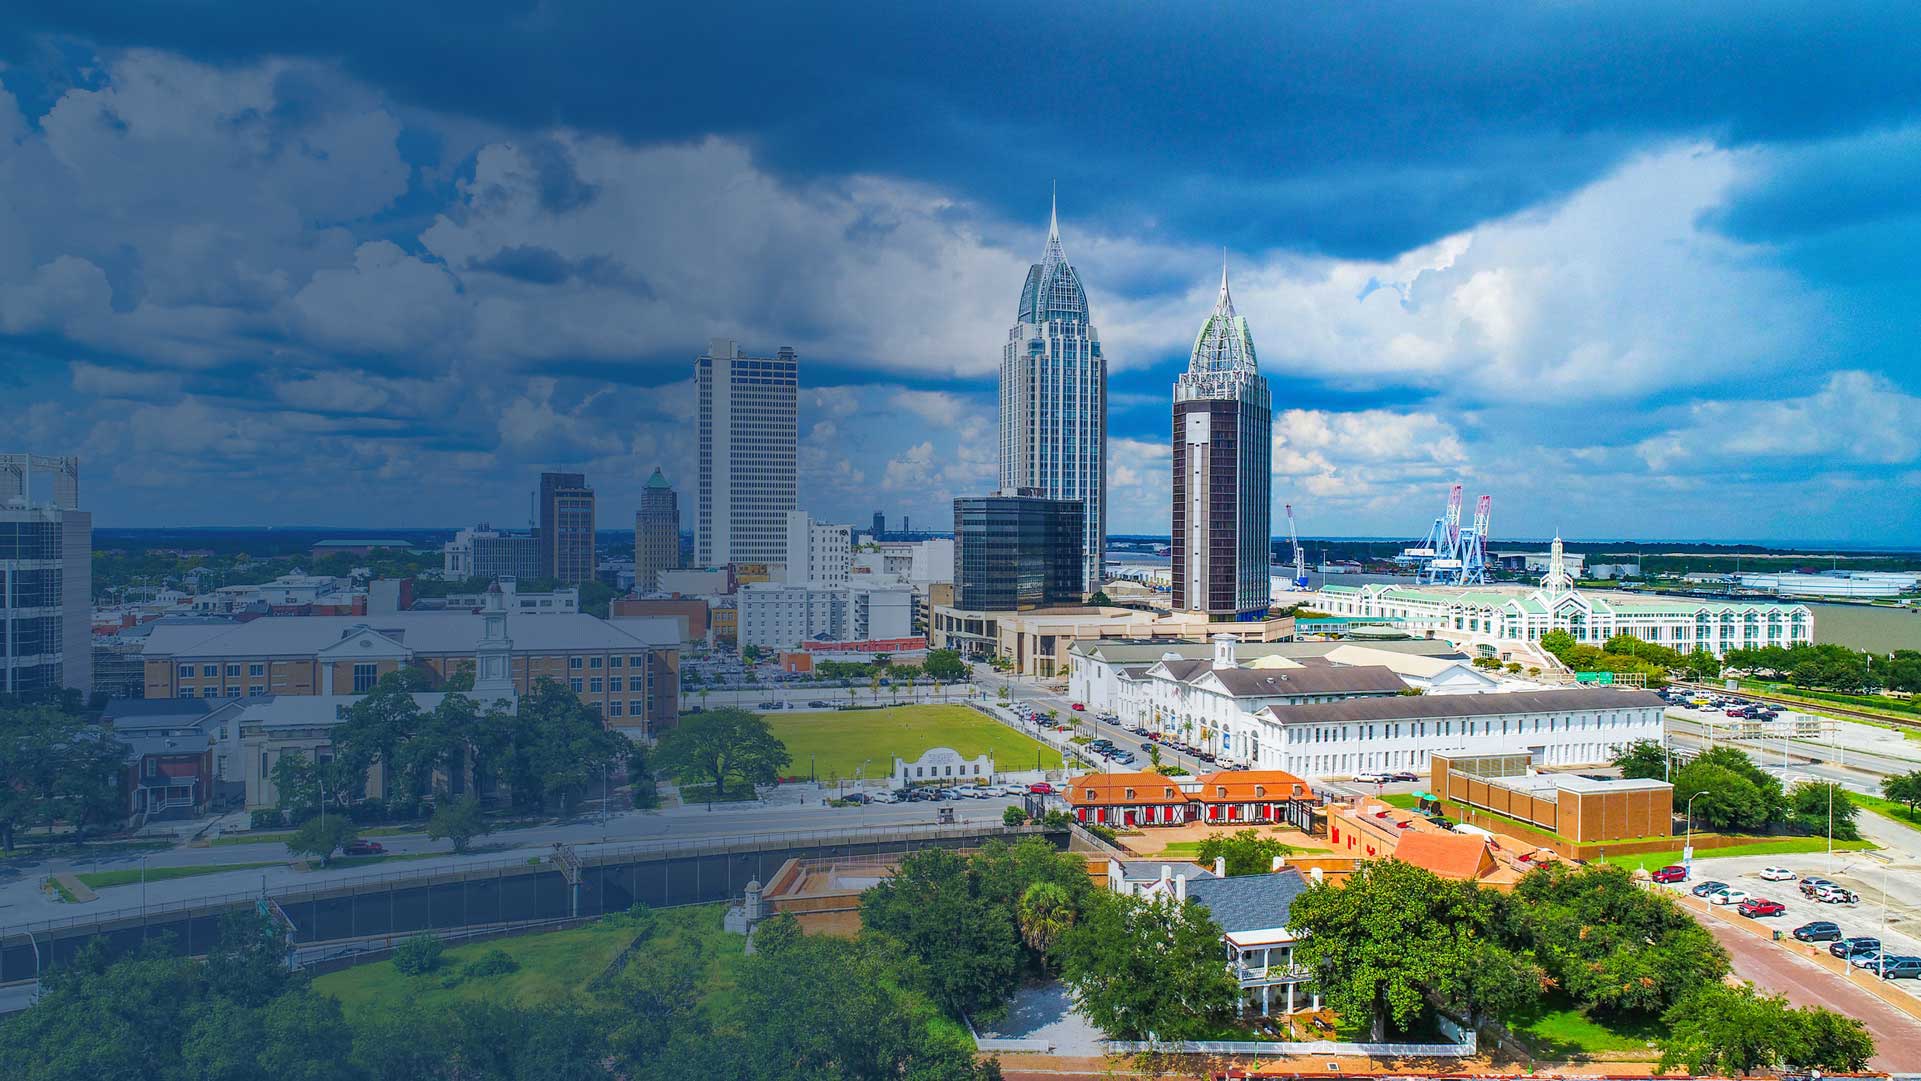 Alabama city skyline